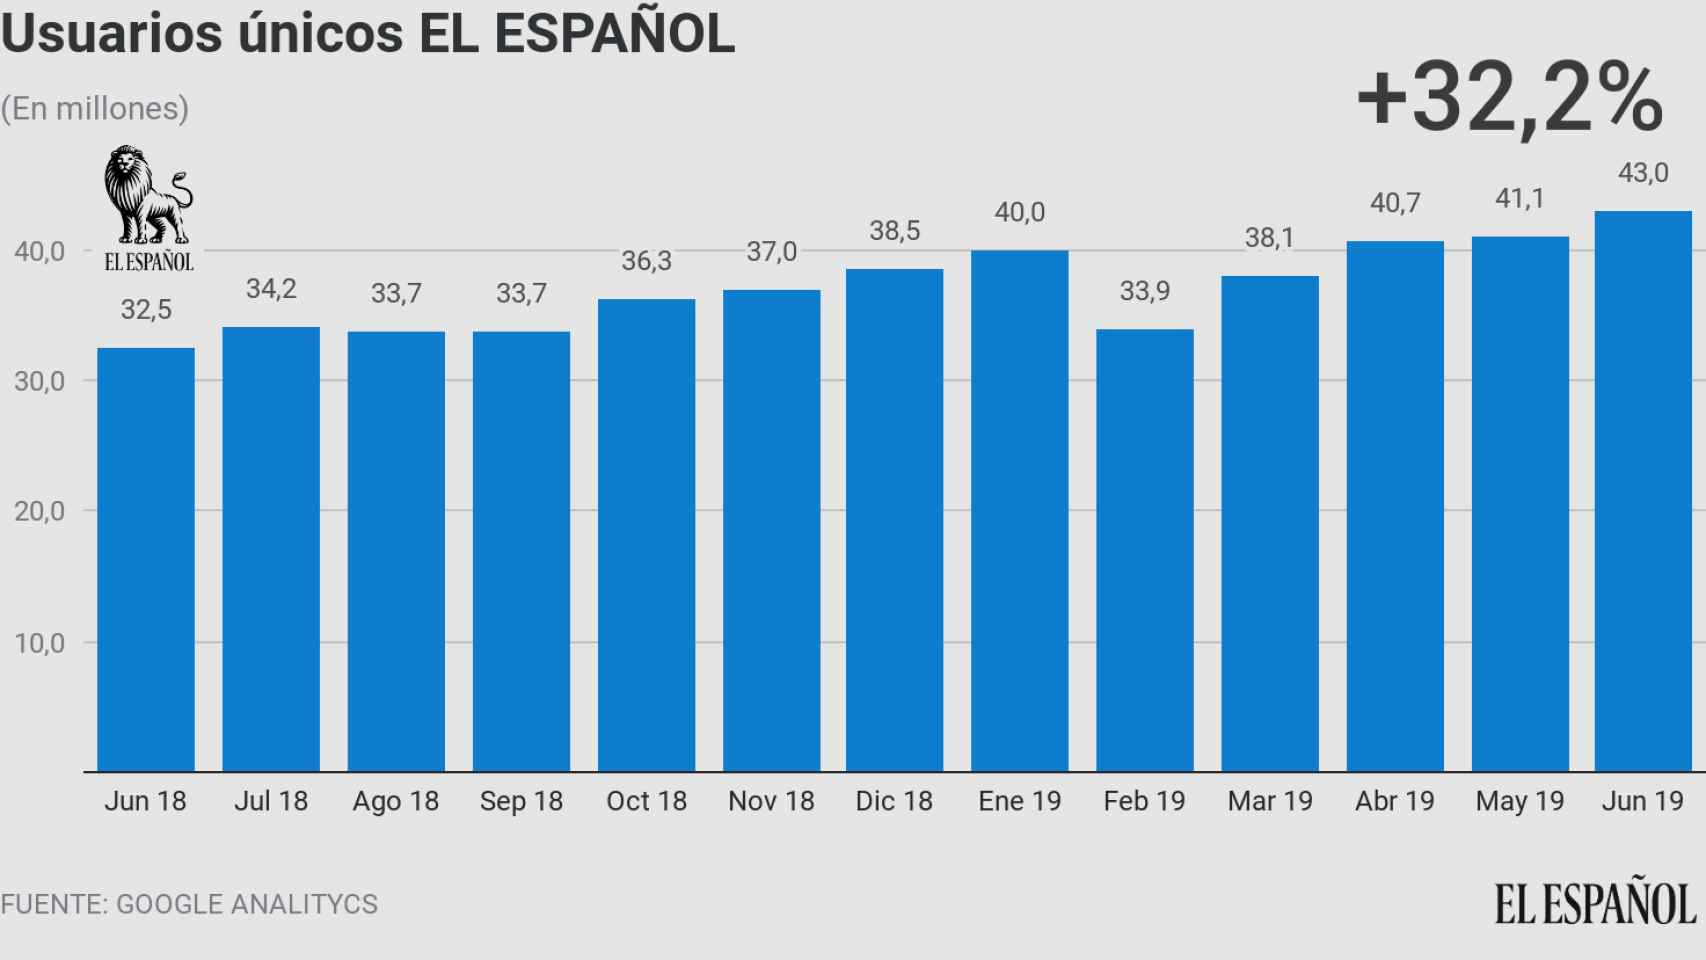 Usuarios únicos de EL ESPAÑOL en junio de 2019, según Google Analytics.